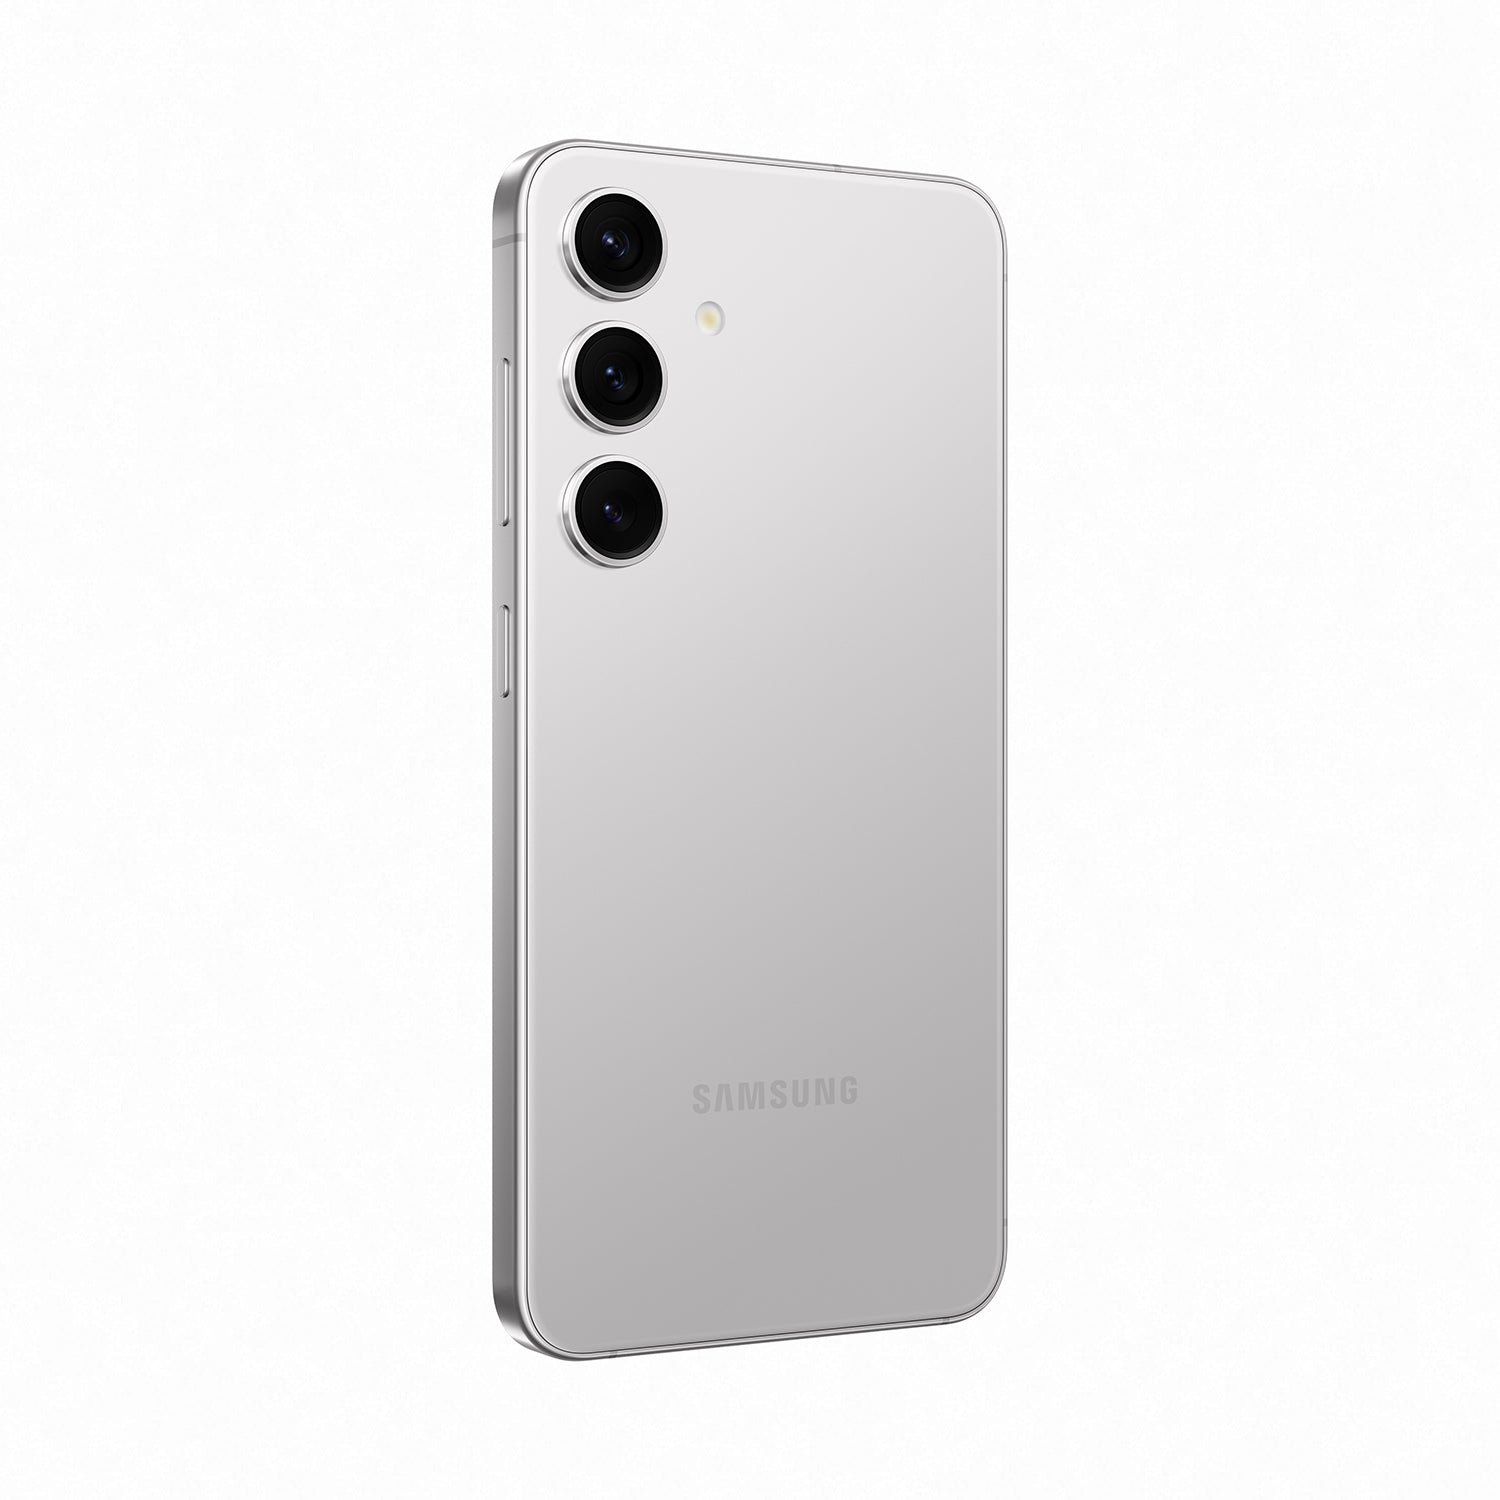 Samsung Galaxy S24+ 系列 智能手機 香港行貨 12個月保養